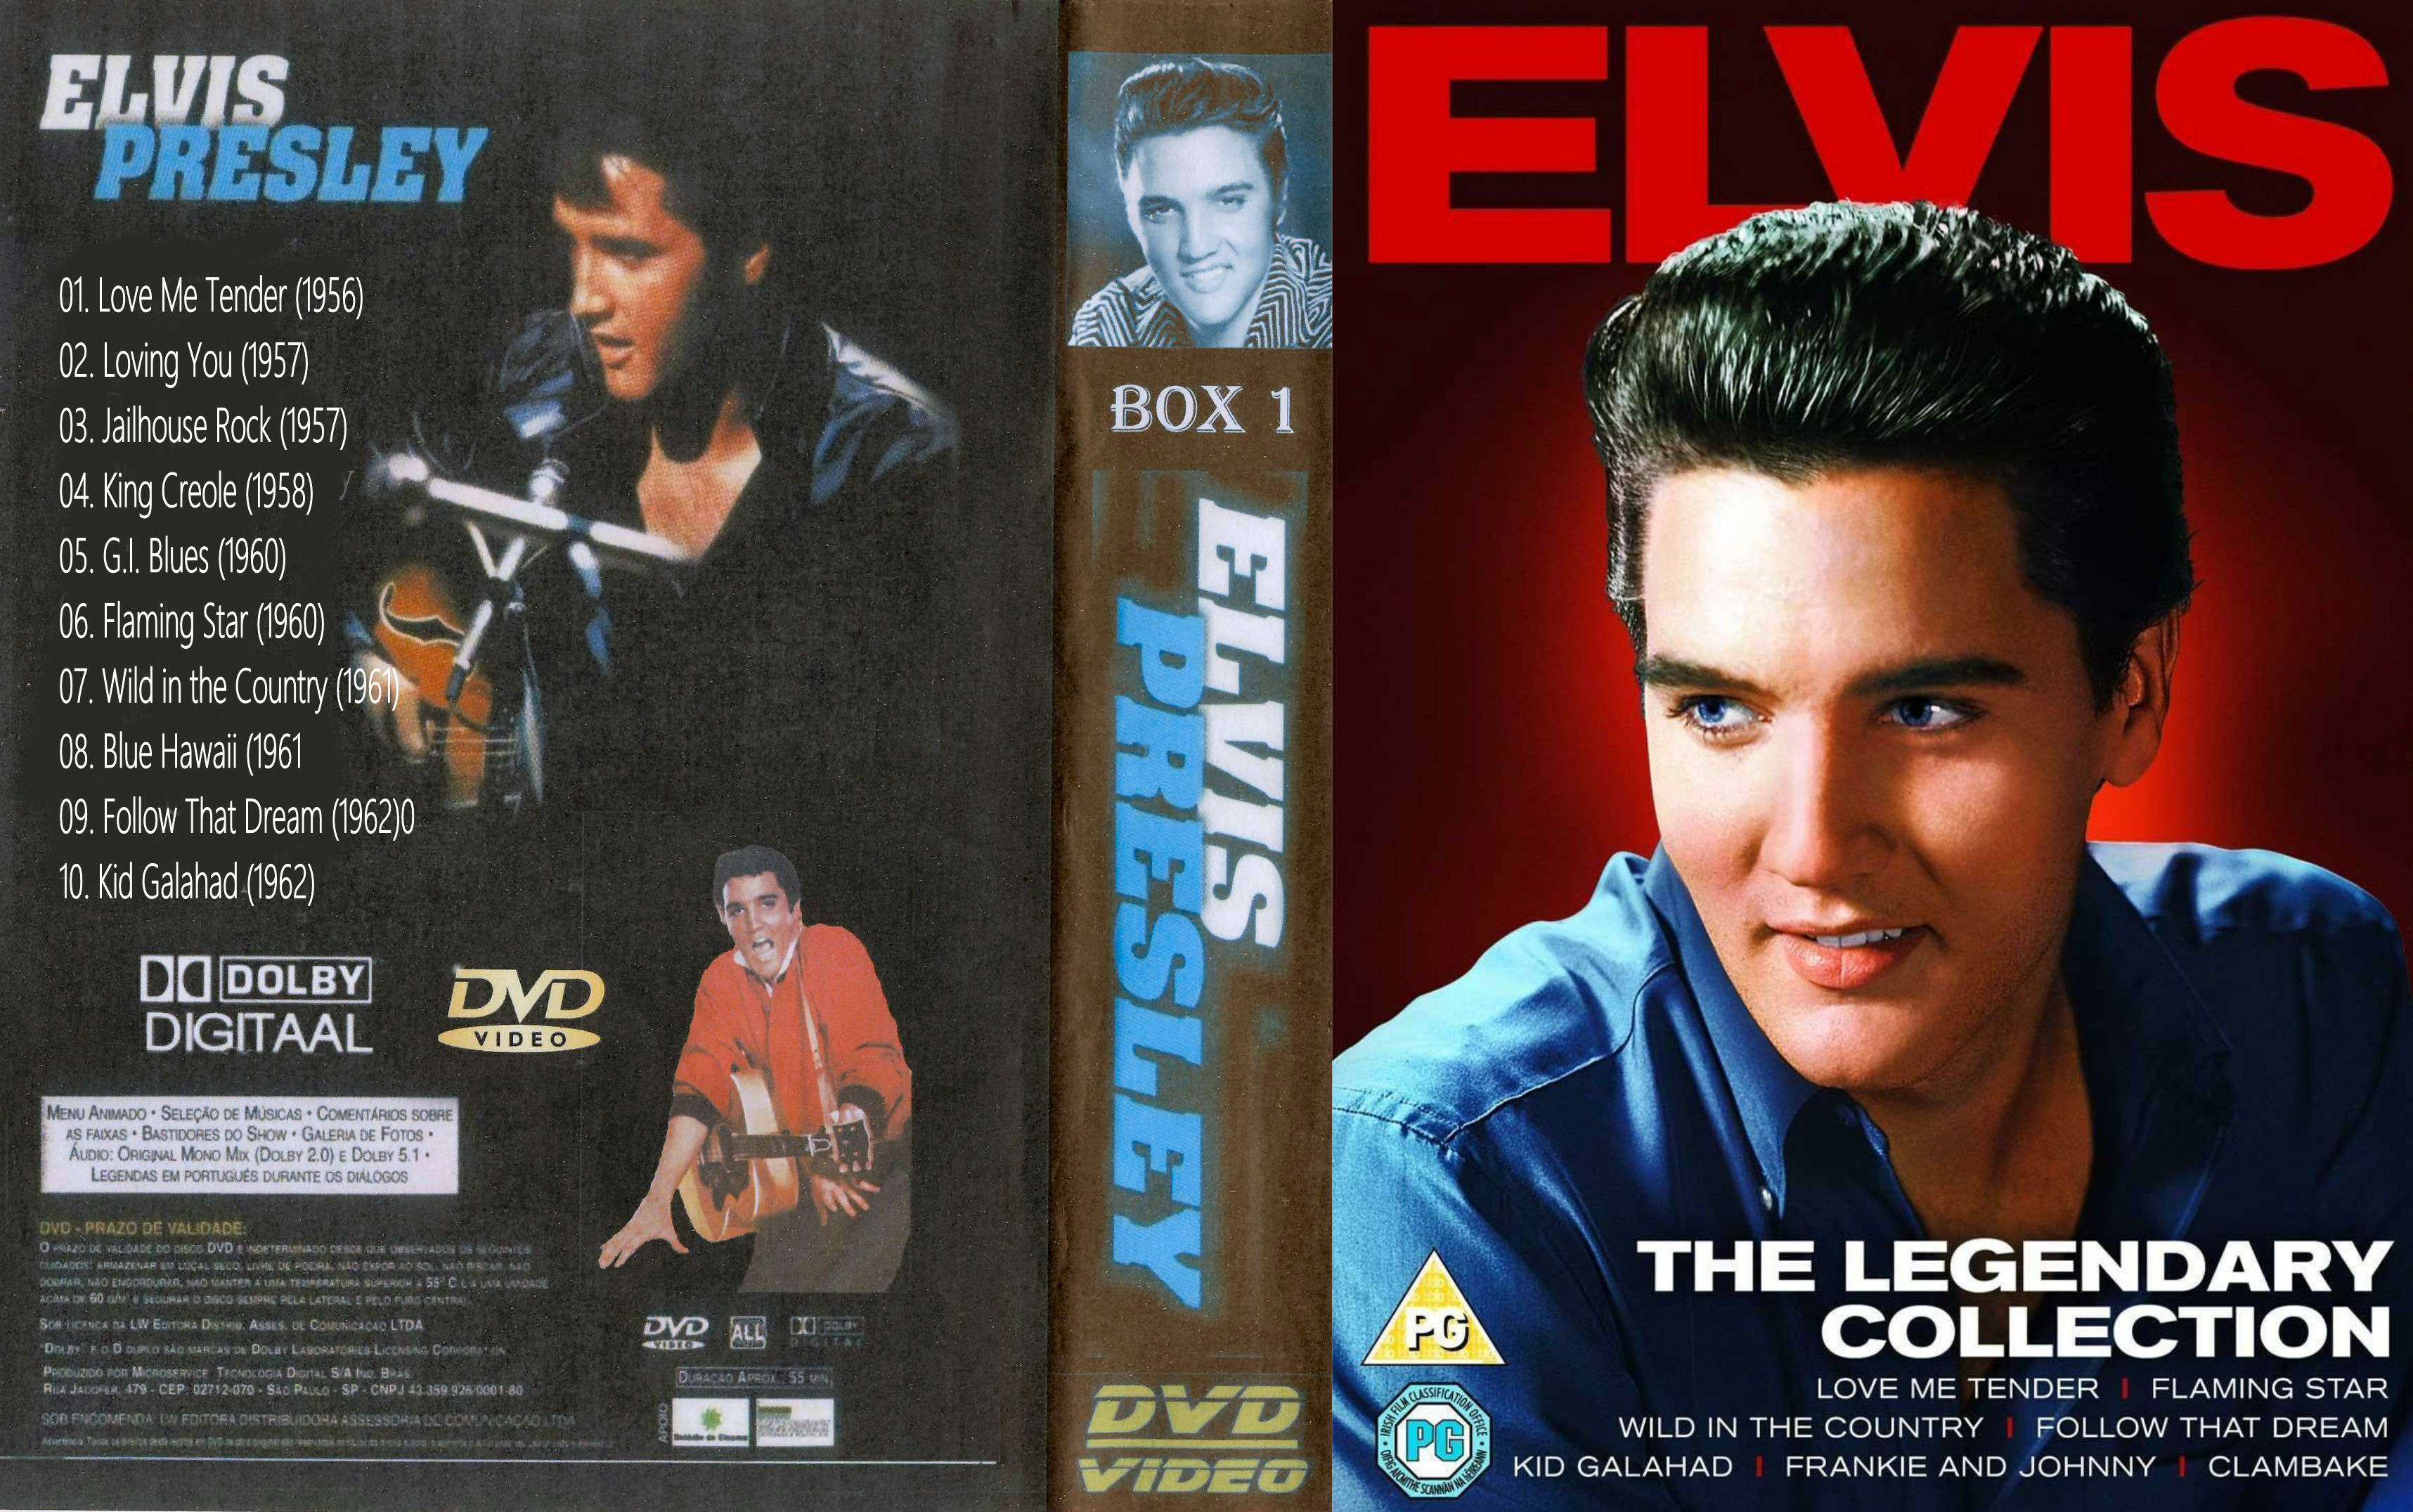 Elvis PresleyCollectie ( 06 - Flaming Star ) DvD 6van 31